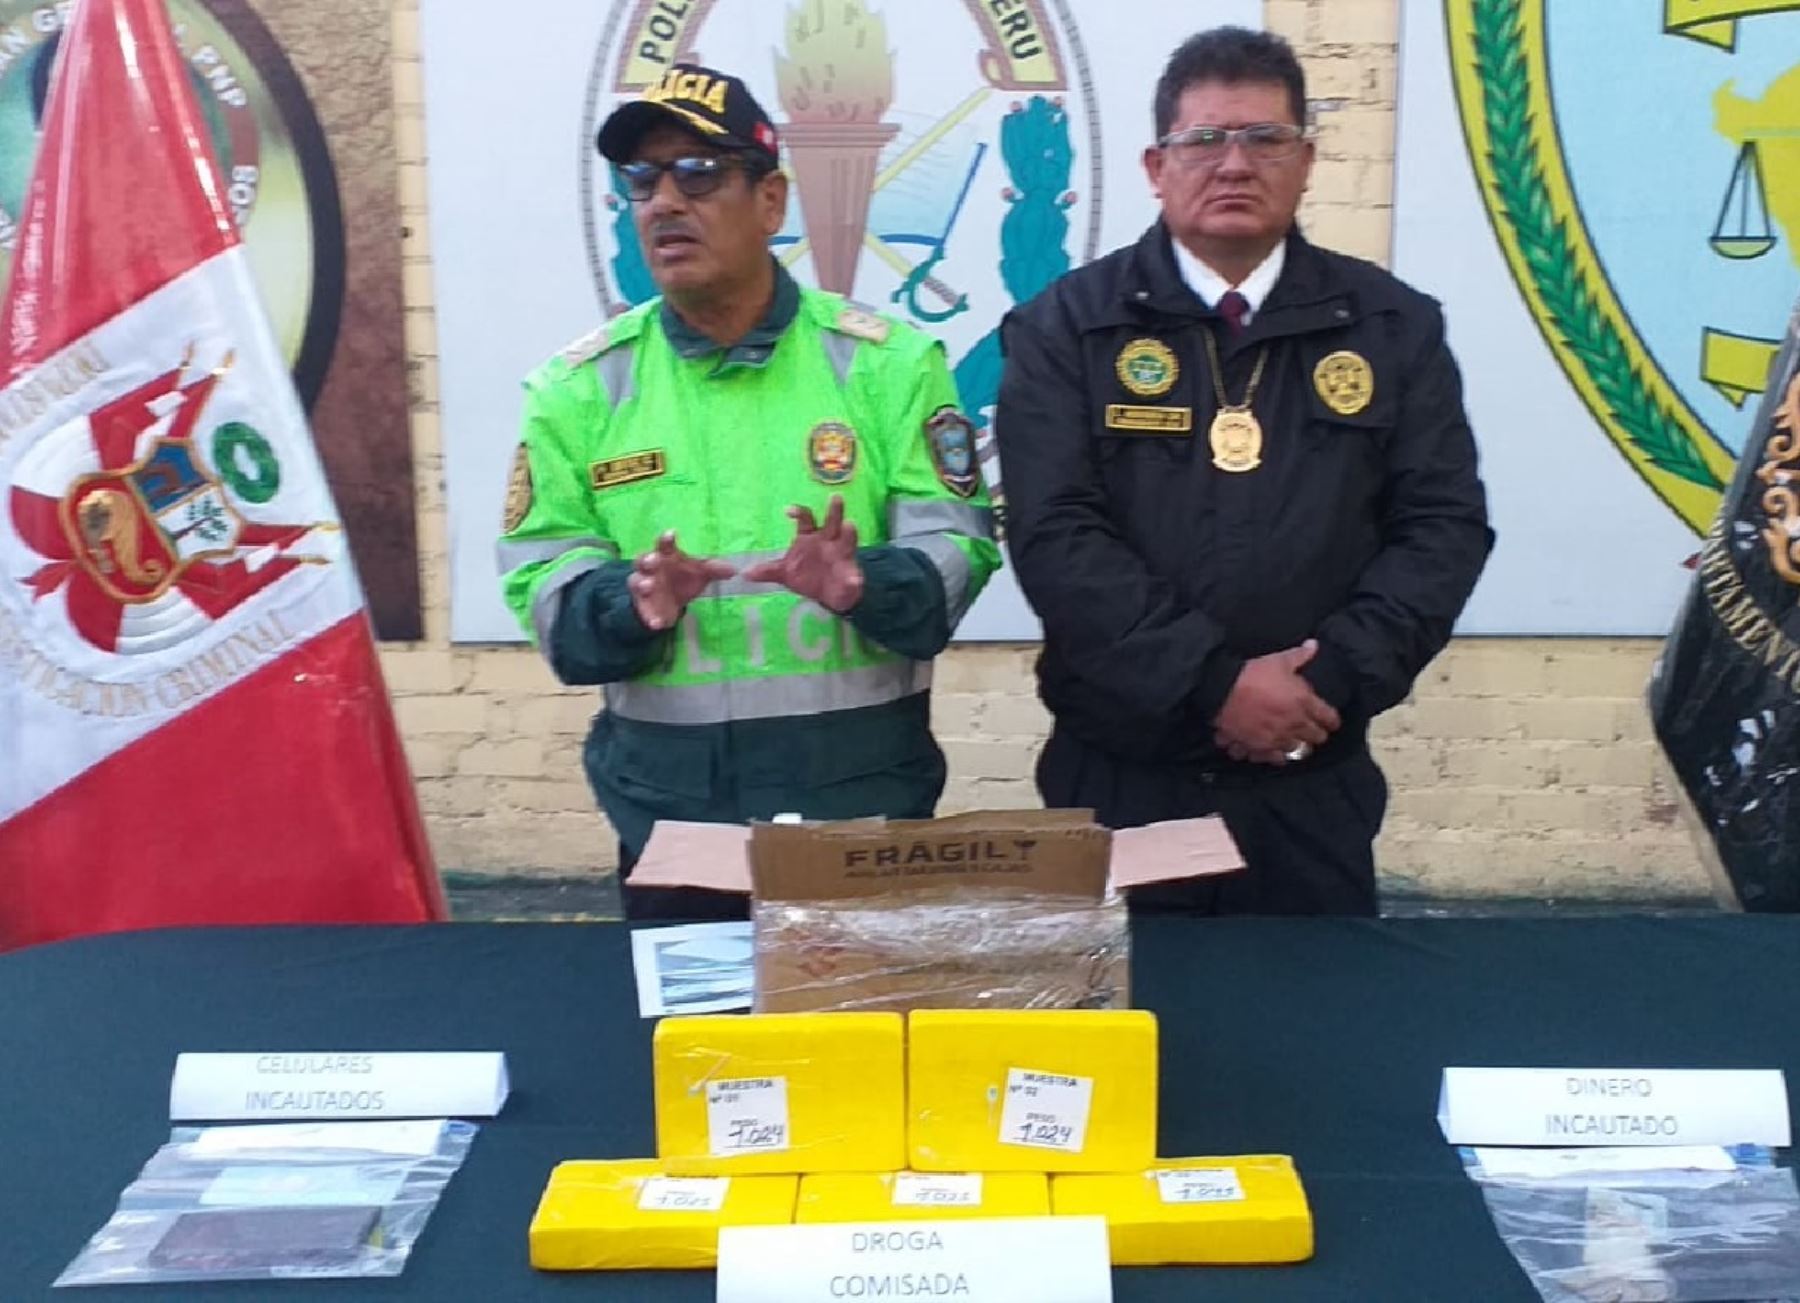 Policía Nacional detuvo en Puno a dos presuntos miembros de banda criminal implicada en tráfico de drogas. A los detenidos se les incautó un cargamento de cocaína. Foto: ANDINA/difusión.